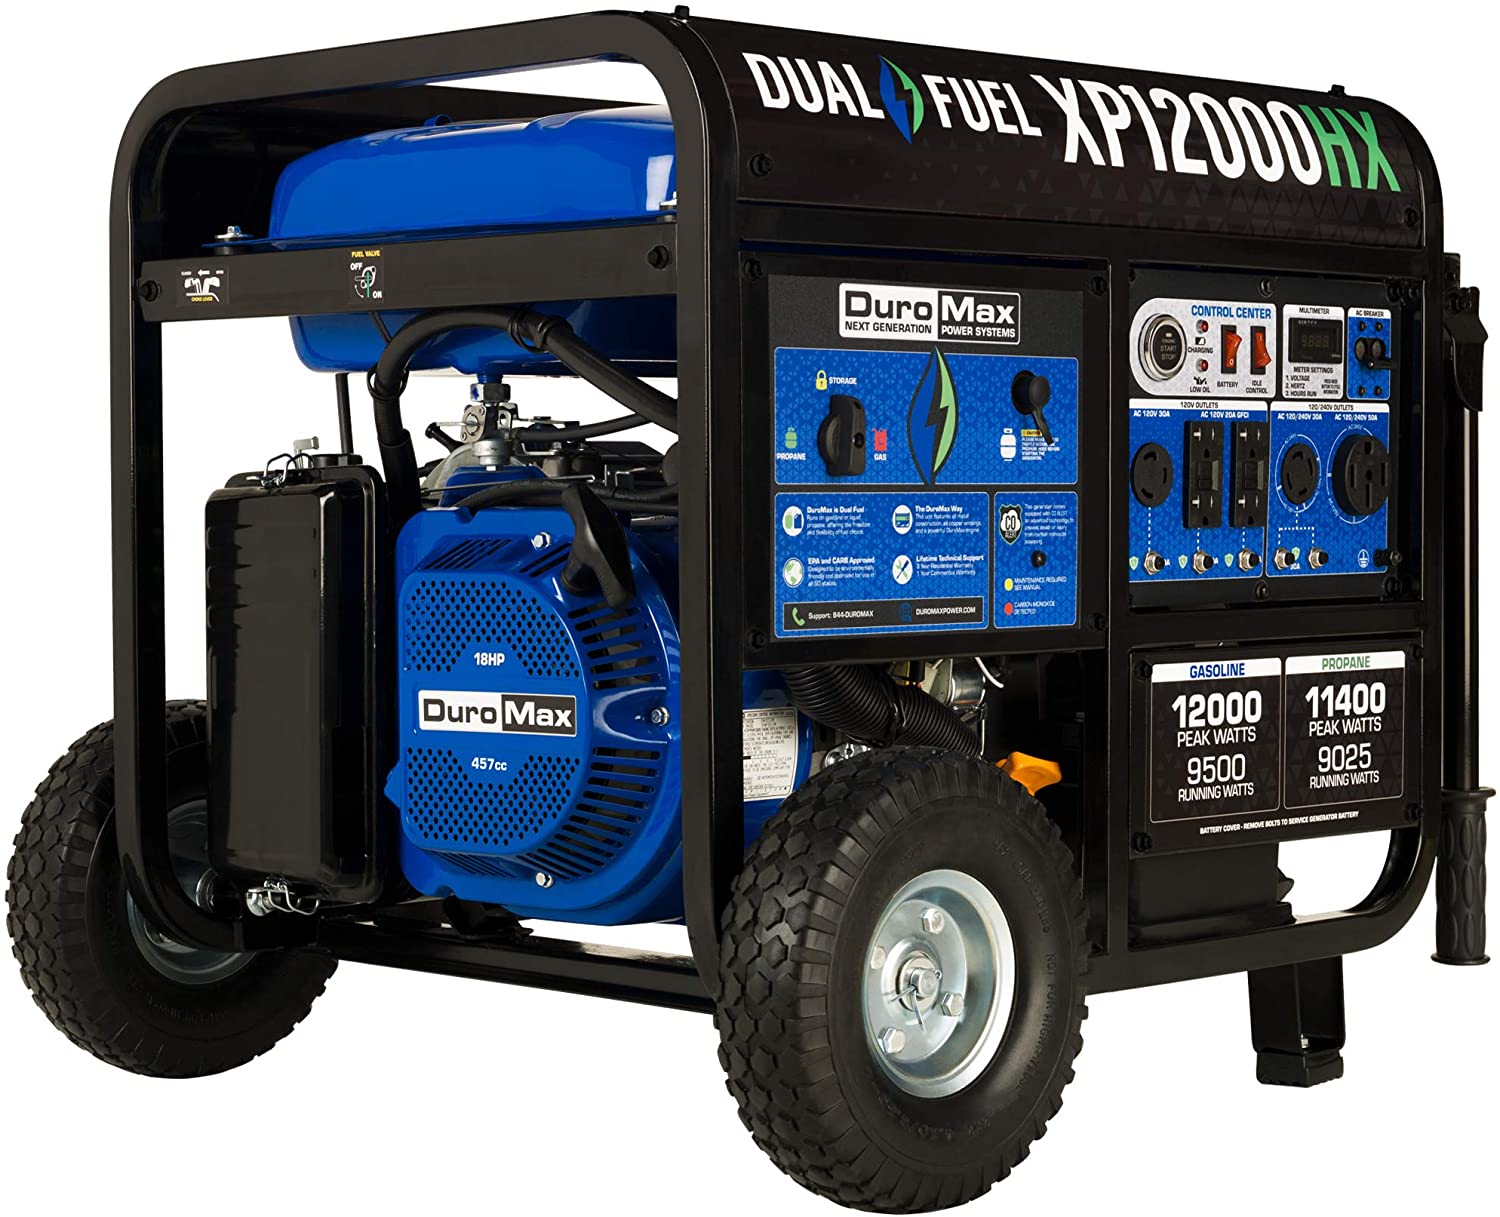 DuroMax XP12000HX Portable Generator